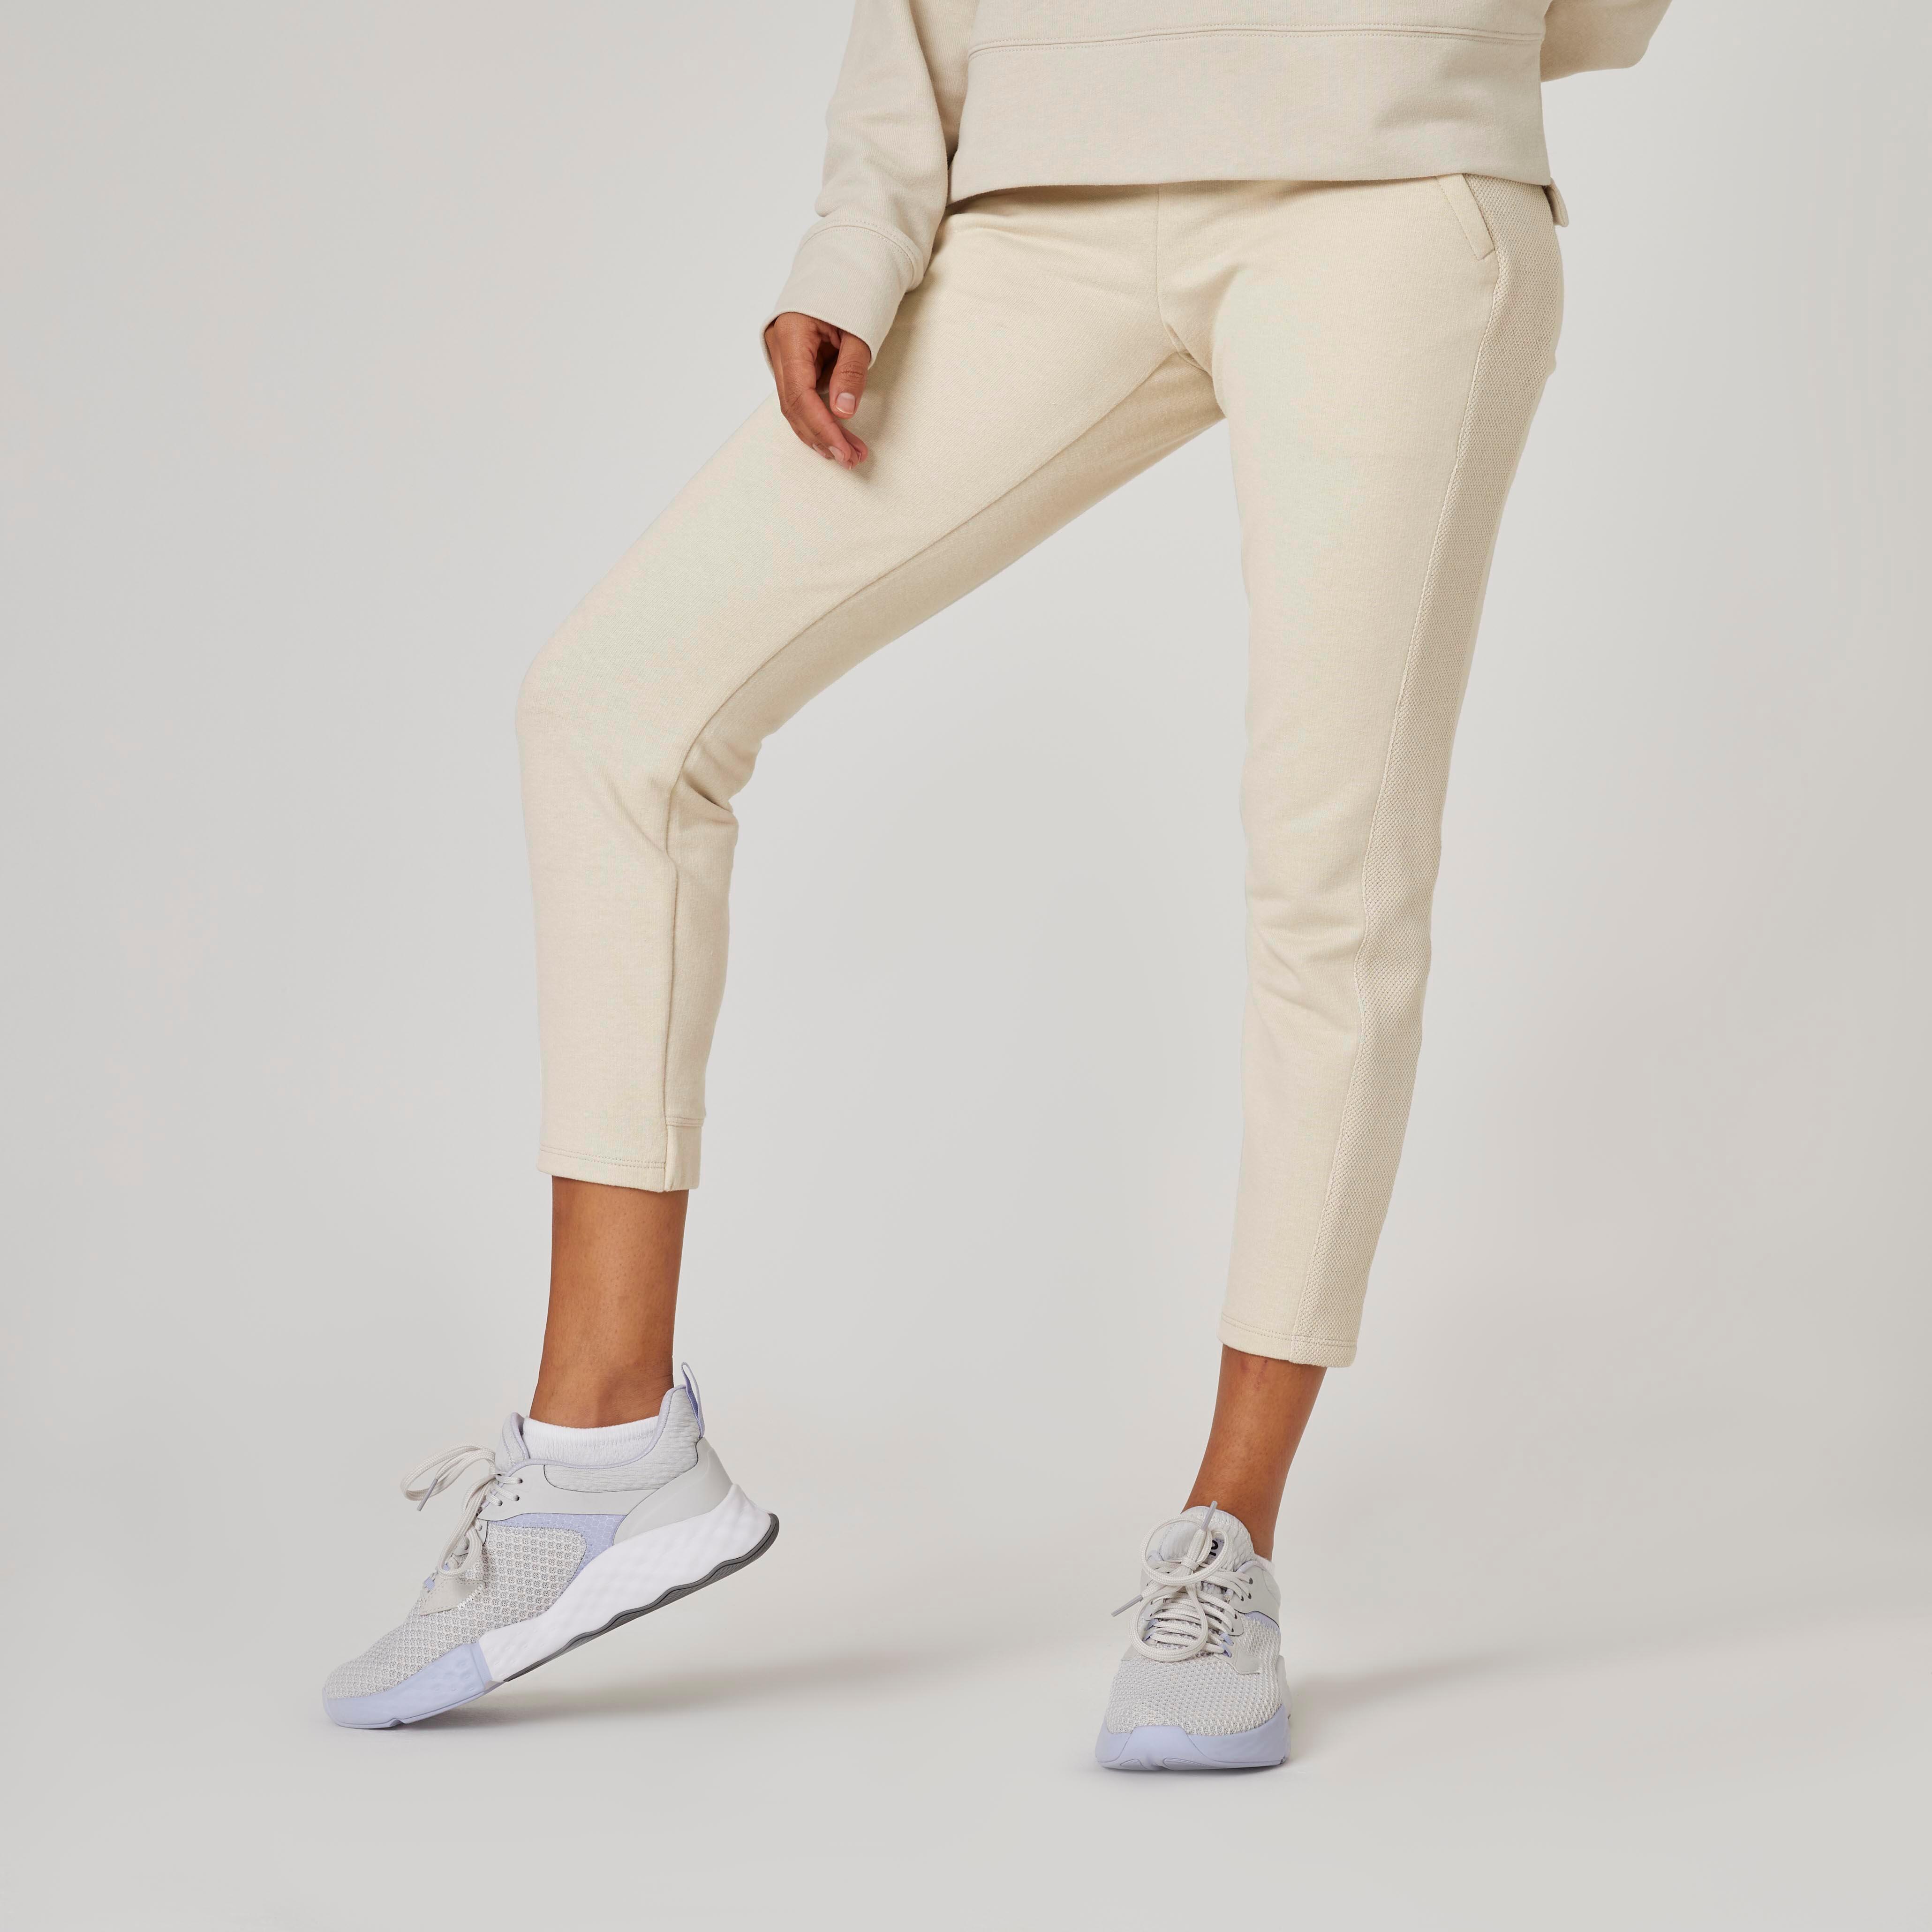 Damen Sport Hose mit Bündchen Groß Taschen Jogginghosen Hosen Größe 2.4-5.5m3003 